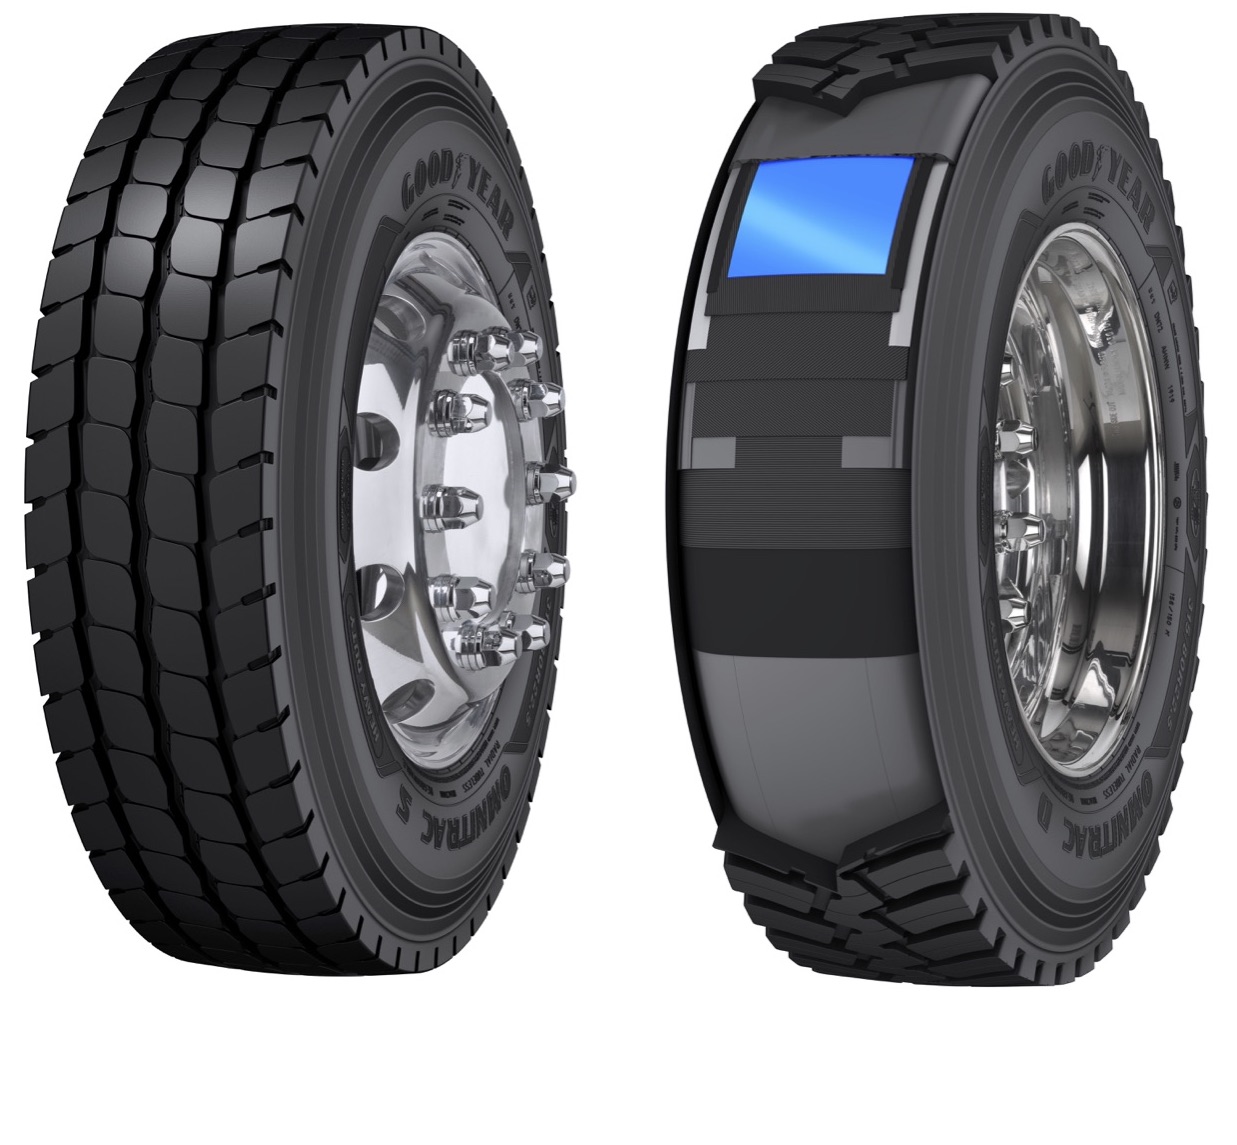 Goodyear lance sa nouvelle gamme de pneumatiques mixte-chantier